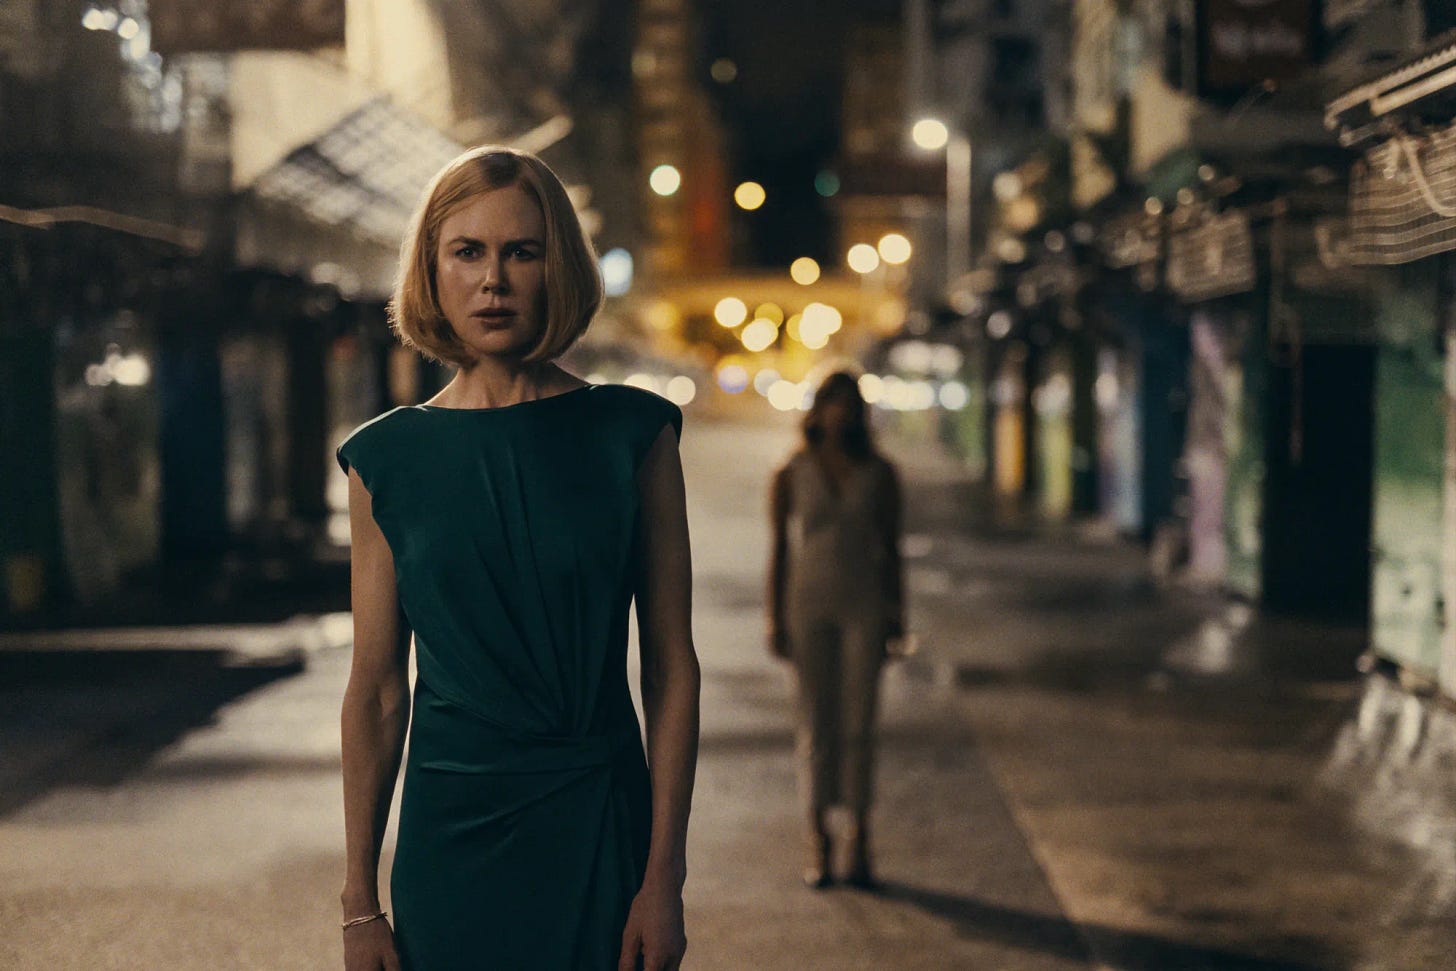 Nicole Kidman em uma rua deserta, à noite, exceto pela presença de outra mulher, em segundo plano e desfocada, atrás dela. Nicole veste um vestido verde escuro e tem cabelo na altura do queixo, loiro e liso.